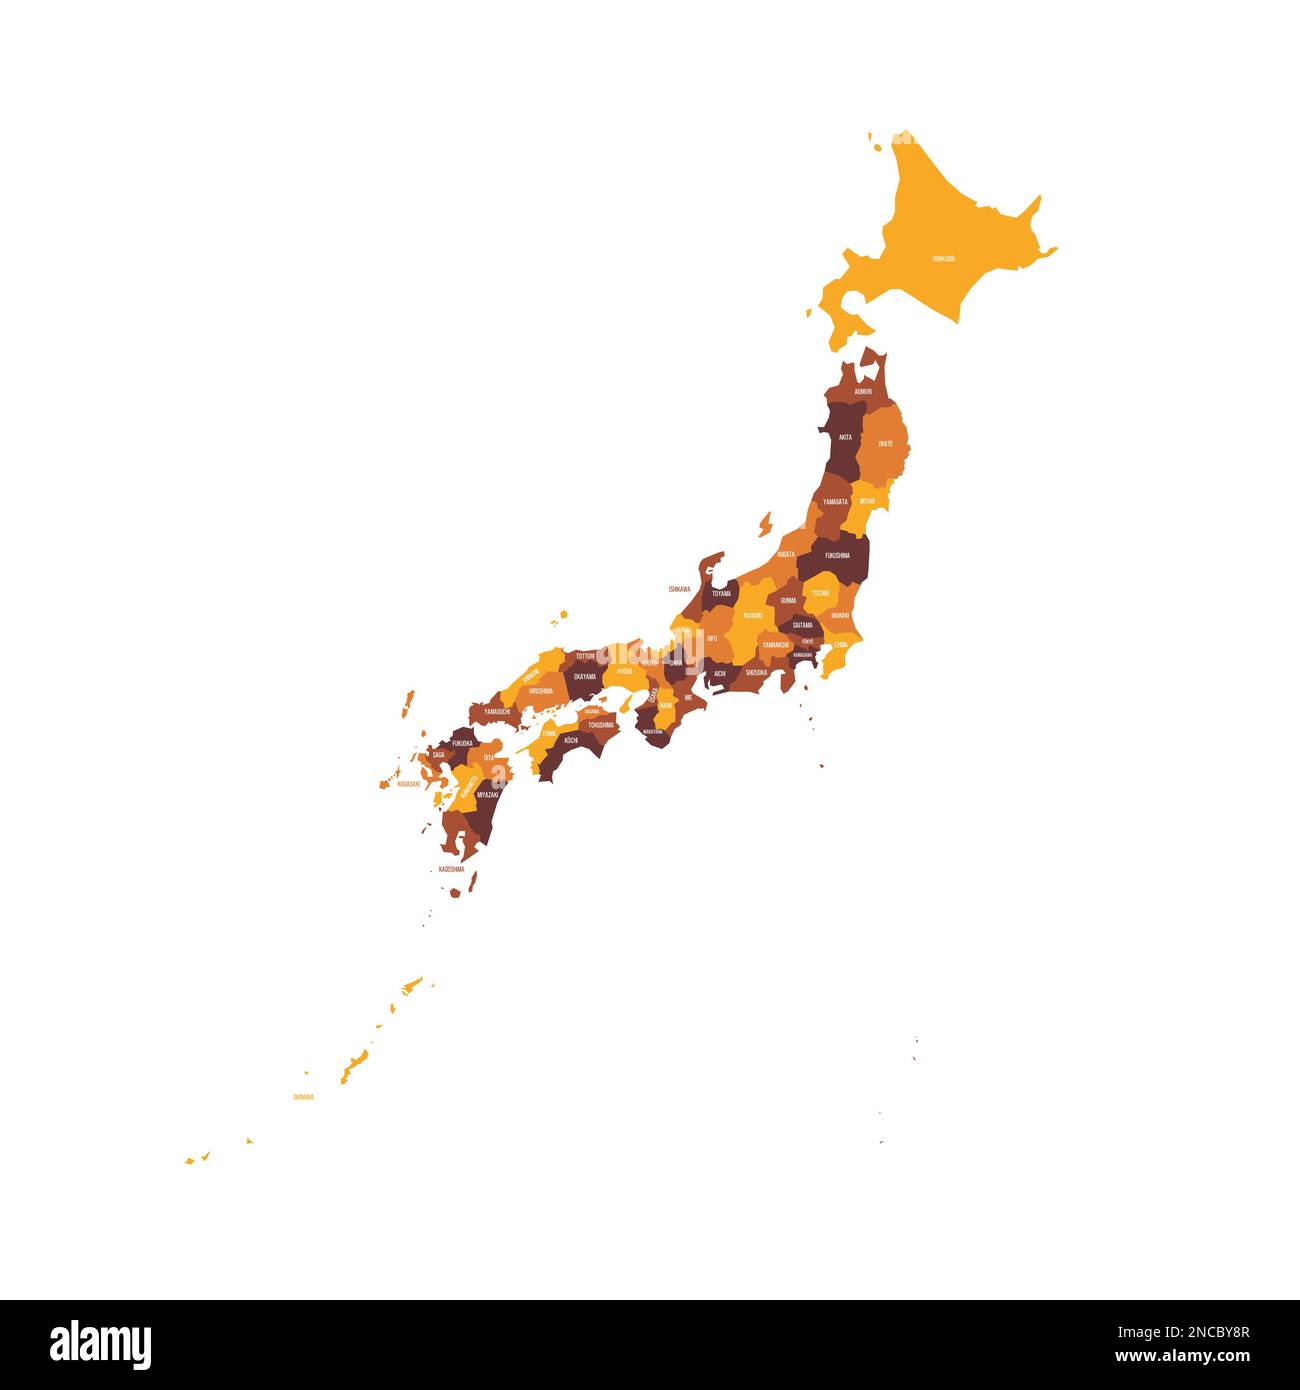 Politische Karte der Verwaltungseinheiten Japans - Präfekturen, Metropilis Tokio, Territorium Hokaido und städtische Präfekturen Kyoto und Osaka. Flache Vektorzuordnung mit Namensbezeichnungen. Braun - orangefarbenes Farbschema. Stock Vektor